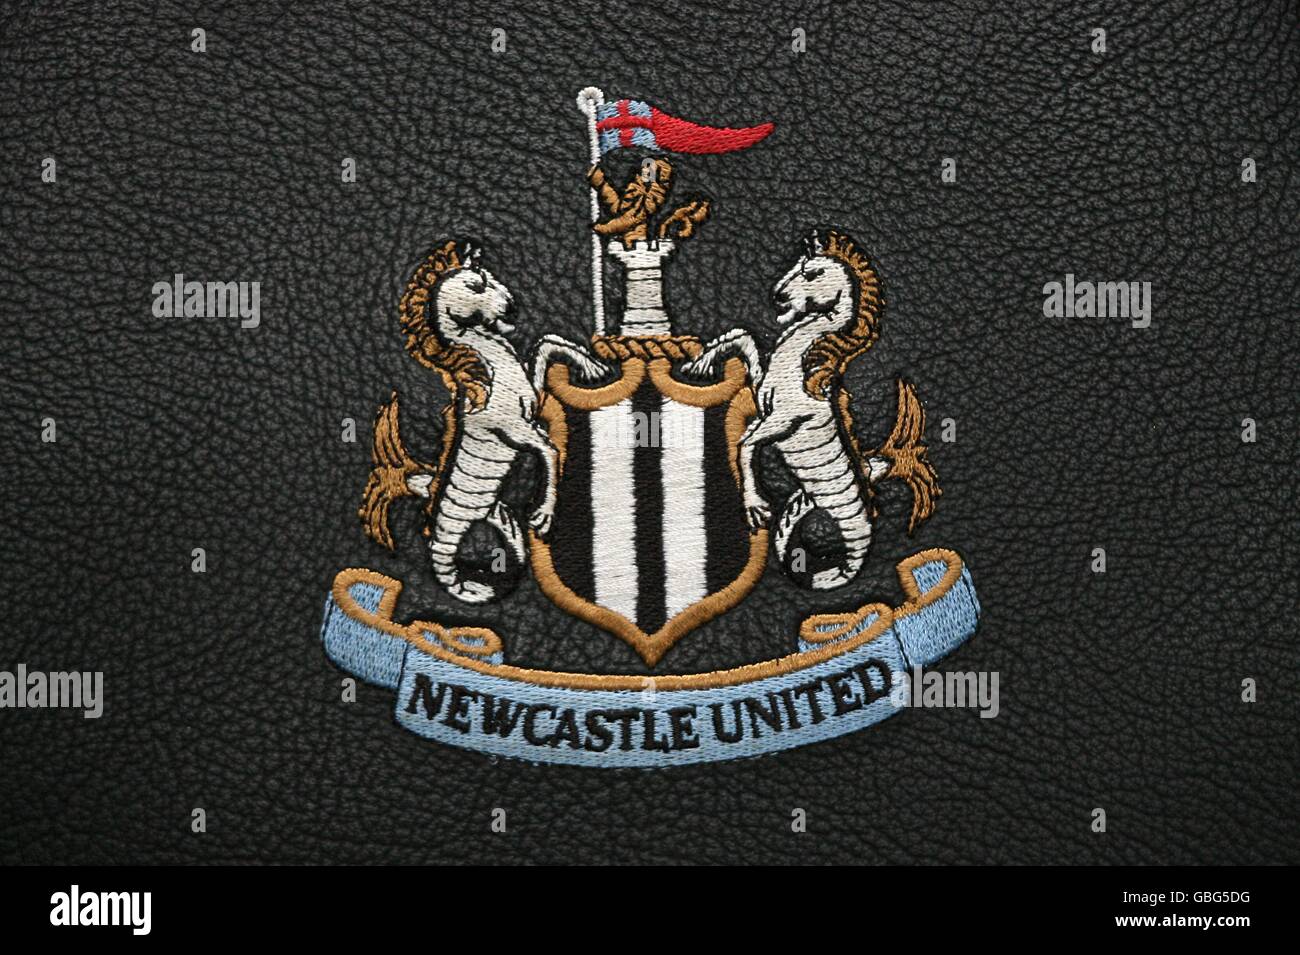 Calcio - Barclays Premier League - Newcastle United / Manchester United - St James' Park. Distintivo del Newcastle United Club Foto Stock